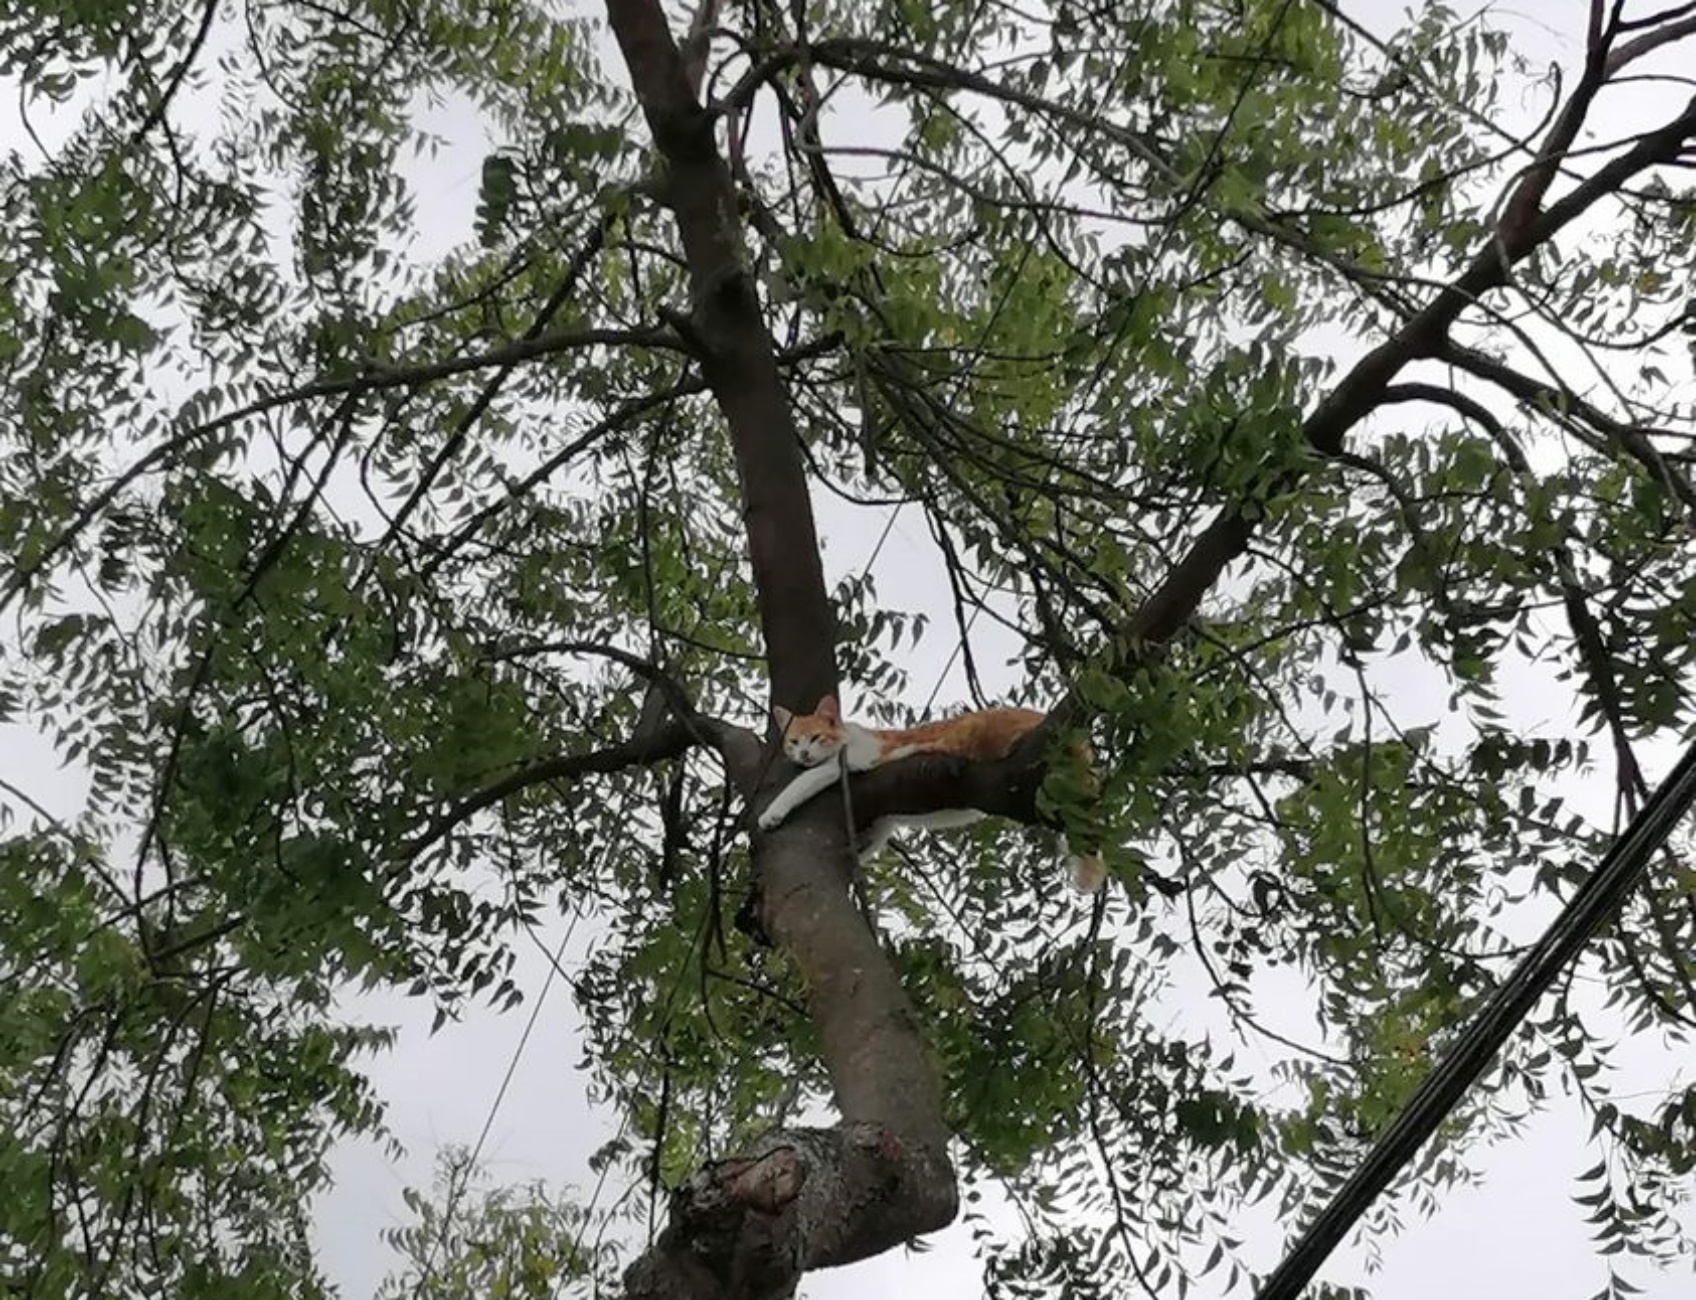 gattino sull'albero